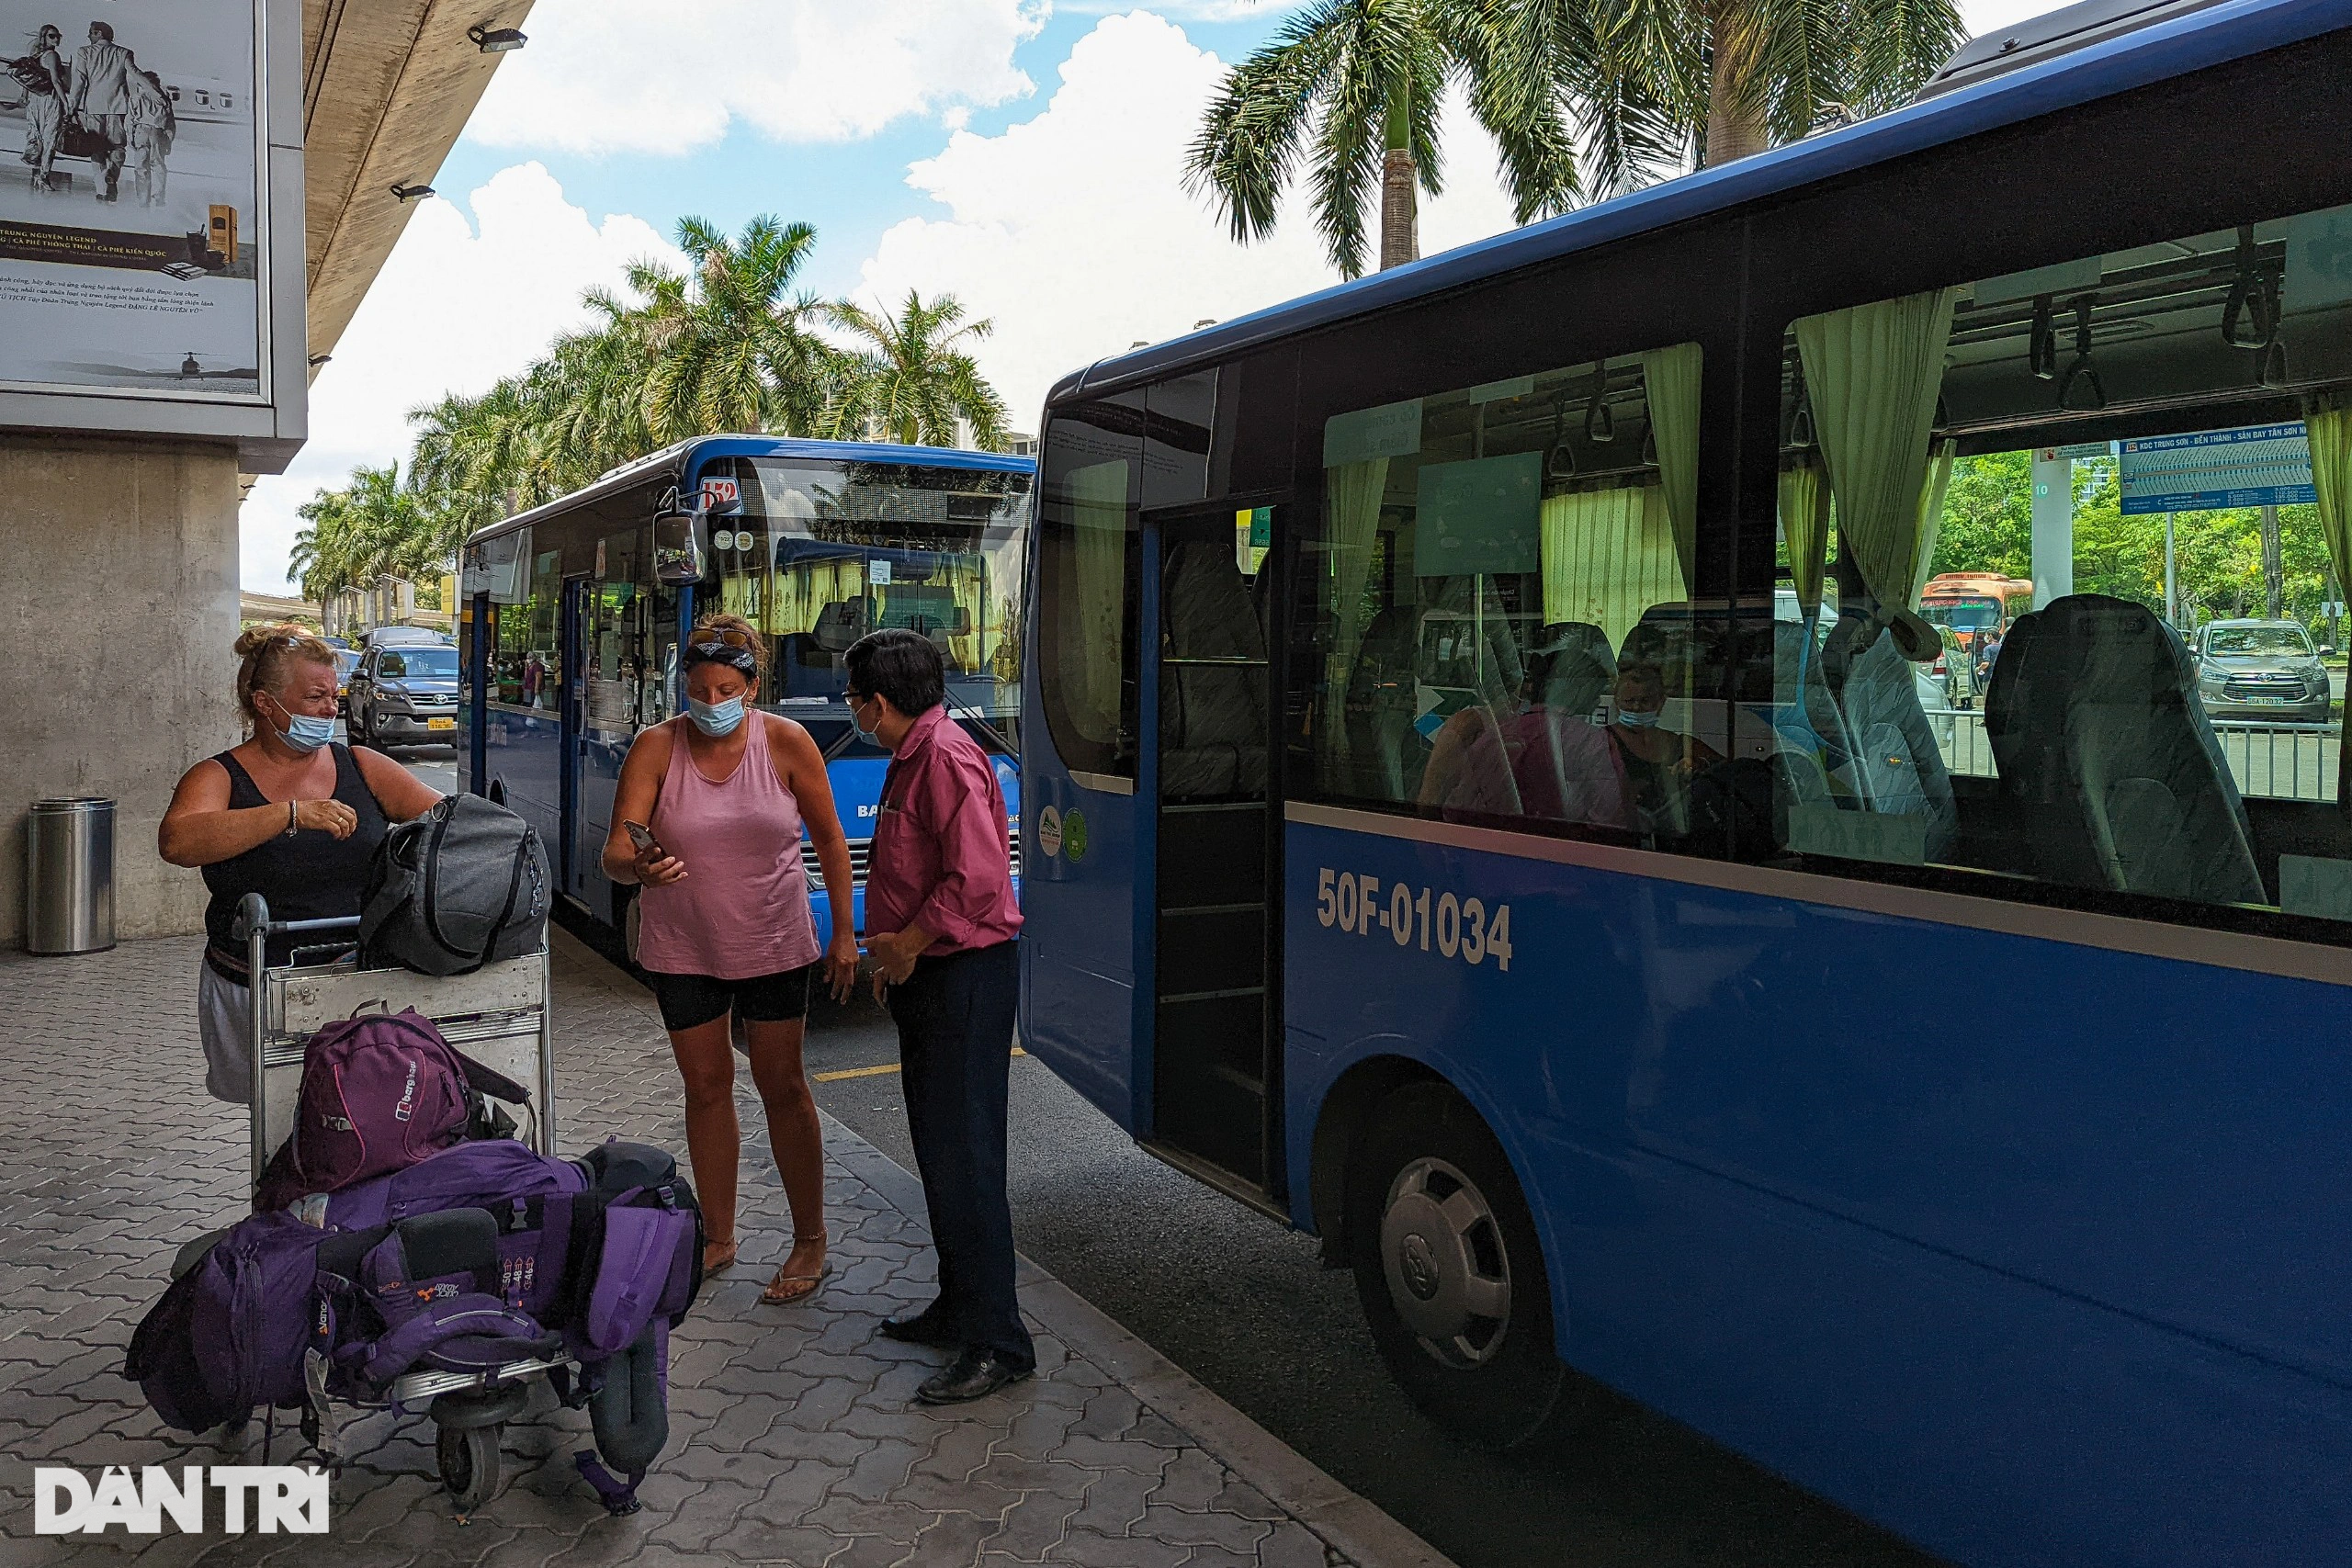 Thêm 14 tuyến xe buýt đón khách ở sân bay Tân Sơn Nhất sau Tết Nguyên đán - 1